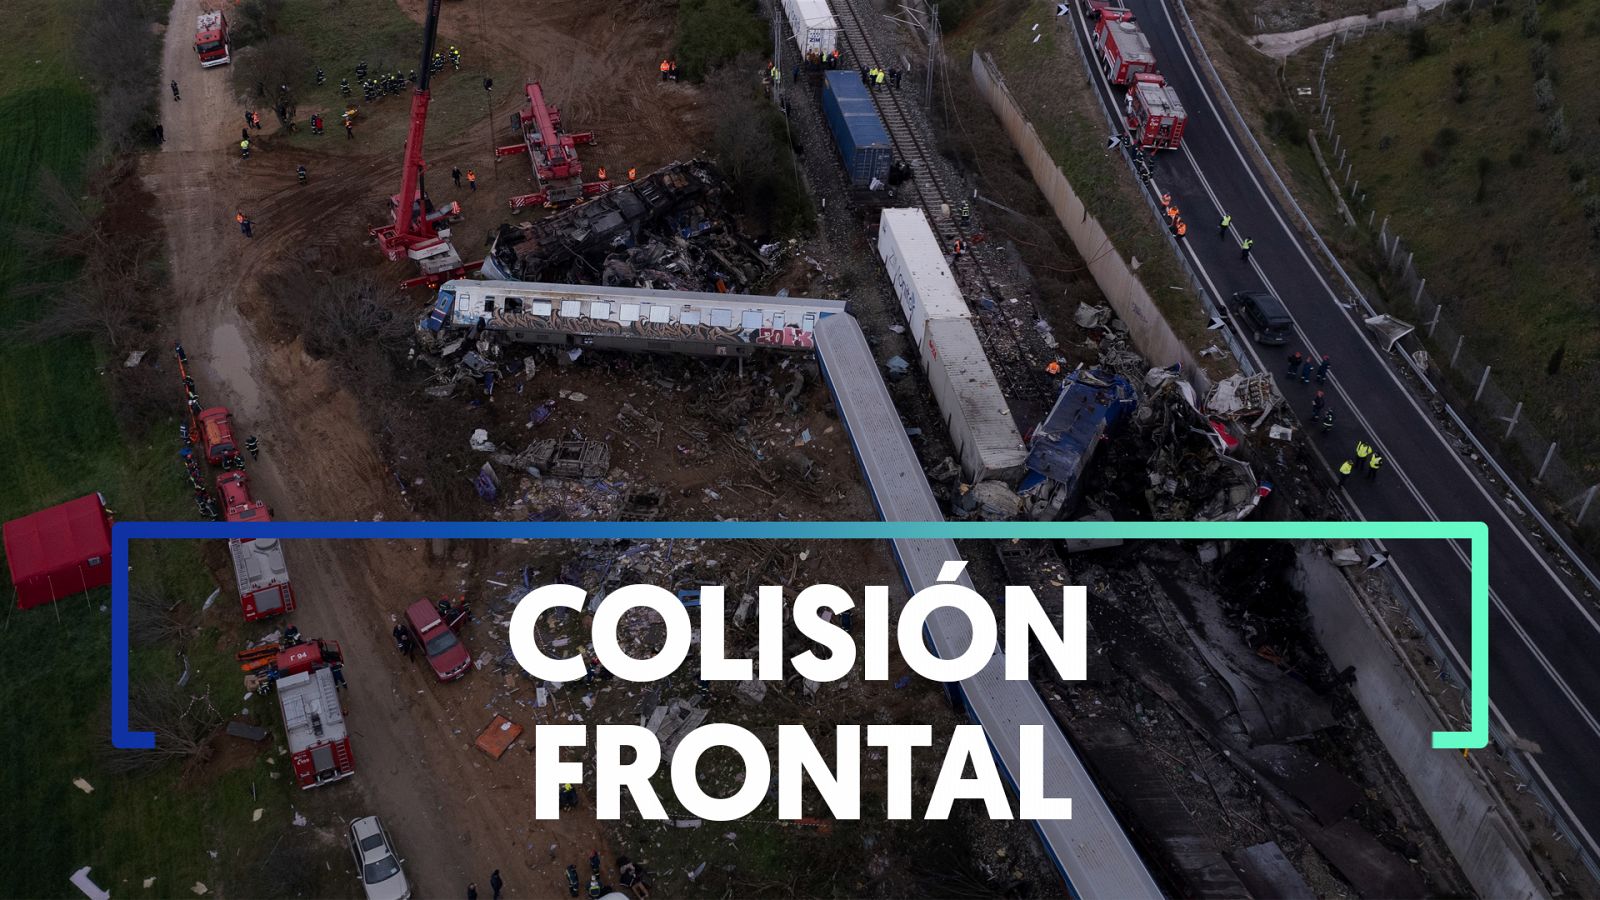 Grecia: Un error humano, principal hipótesis del accidente ferroviario que deja 36 muertos | RTVE